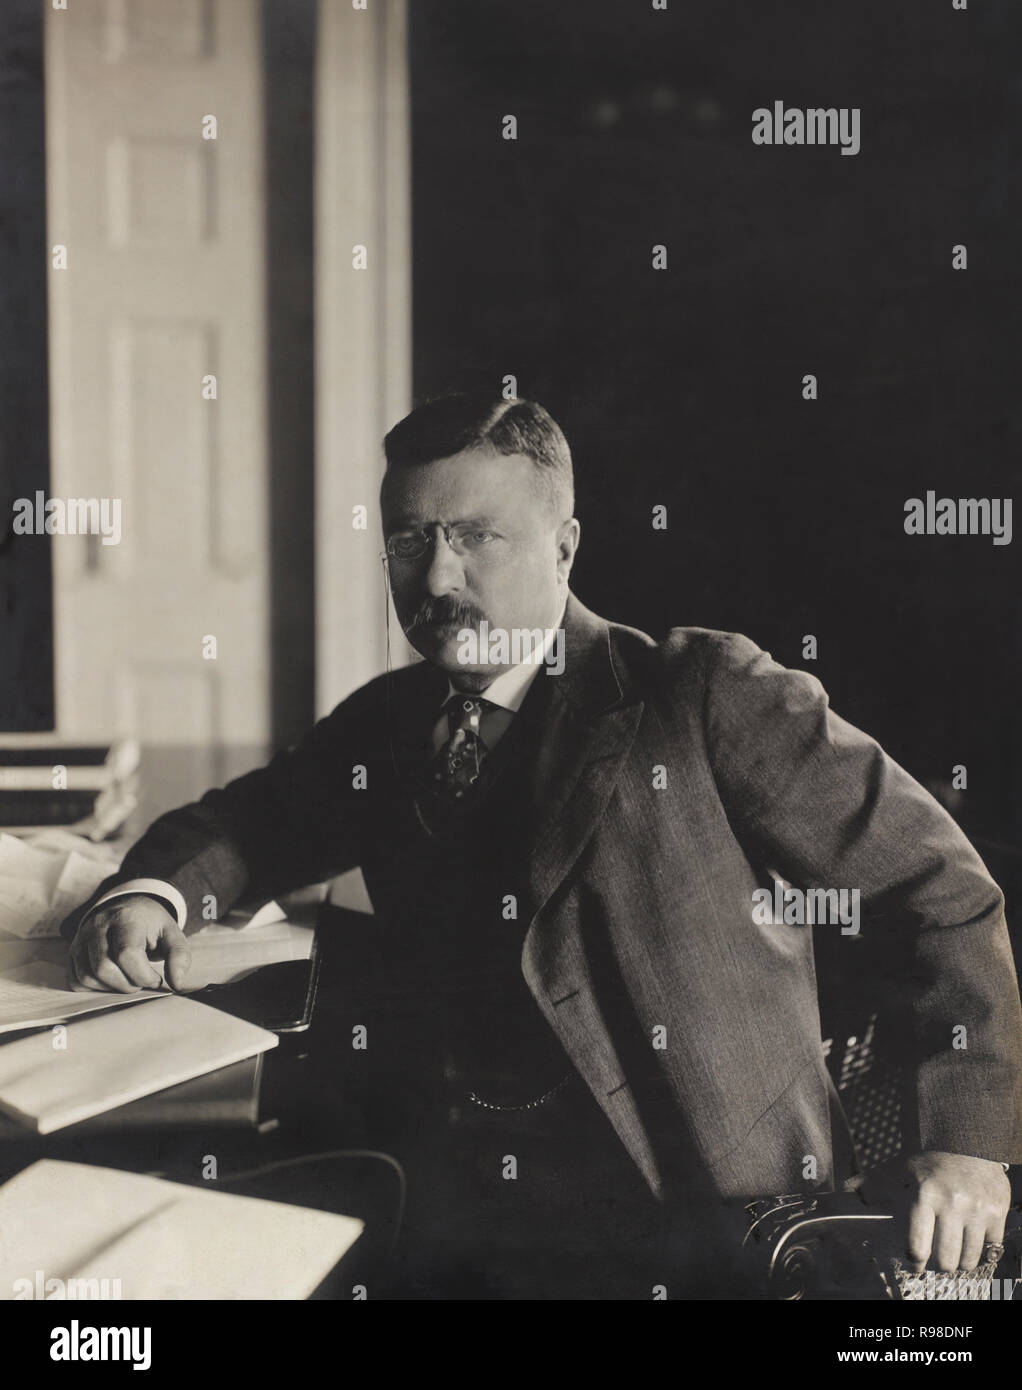 Us-Präsident Theodore Roosevelt, Porträt sitzt am Schreibtisch in seinem neuen Büro, Washington DC, USA, von Barnett McFee Clinedinst, 10. Februar 1903 Stockfoto